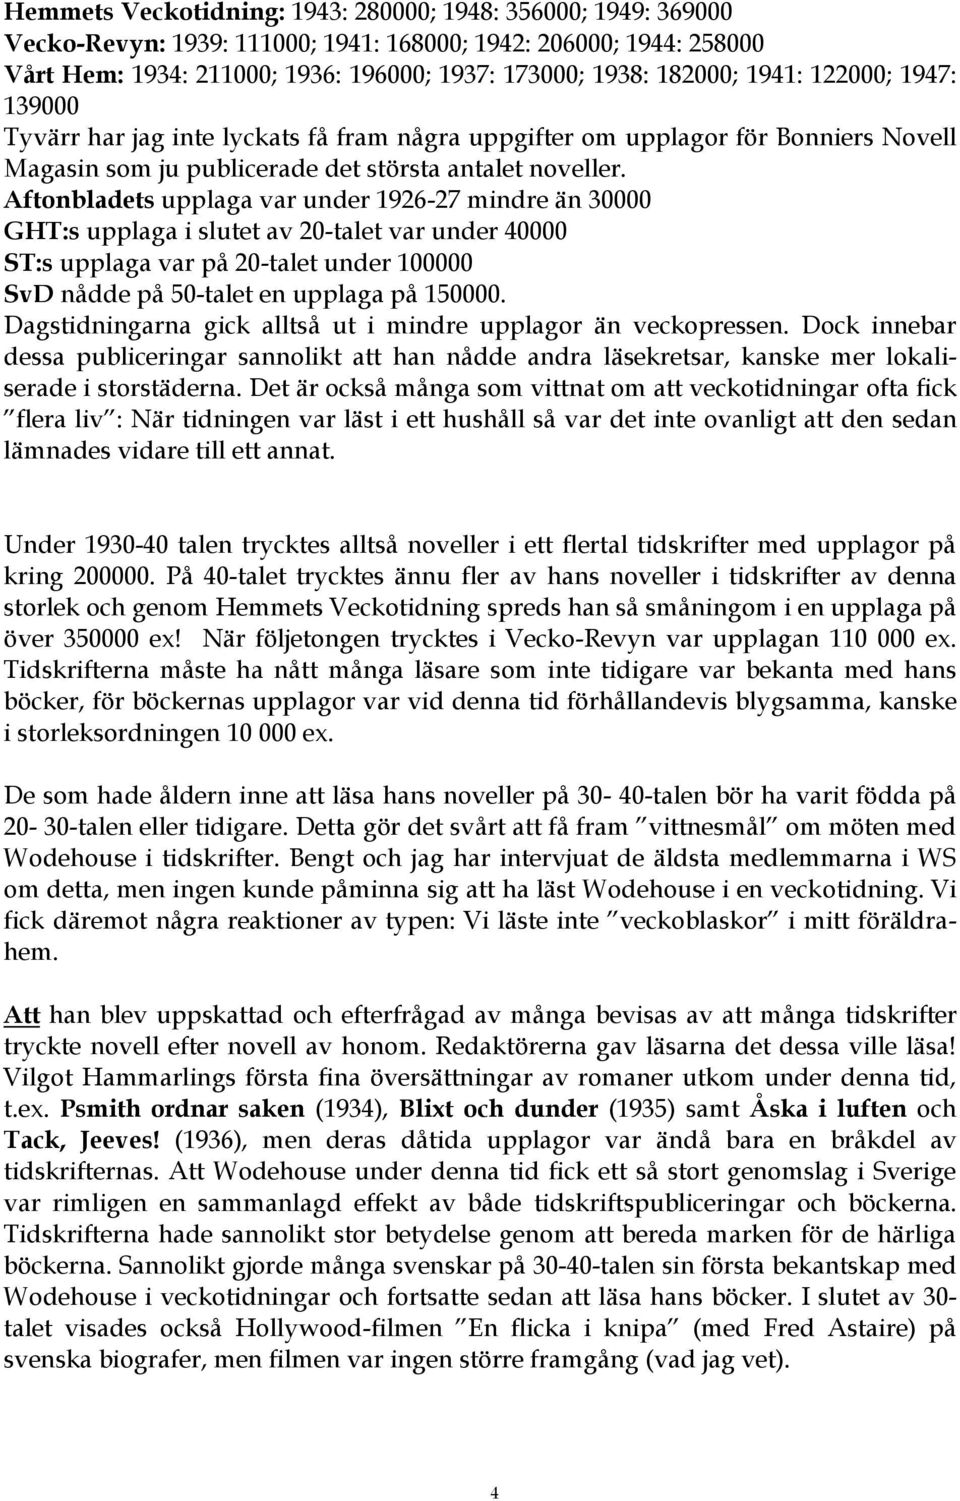 Aftonbladets upplaga var under 1926-27 mindre än 30000 GHT:s upplaga i slutet av 20-talet var under 40000 ST:s upplaga var på 20-talet under 100000 SvD nådde på 50-talet en upplaga på 150000.